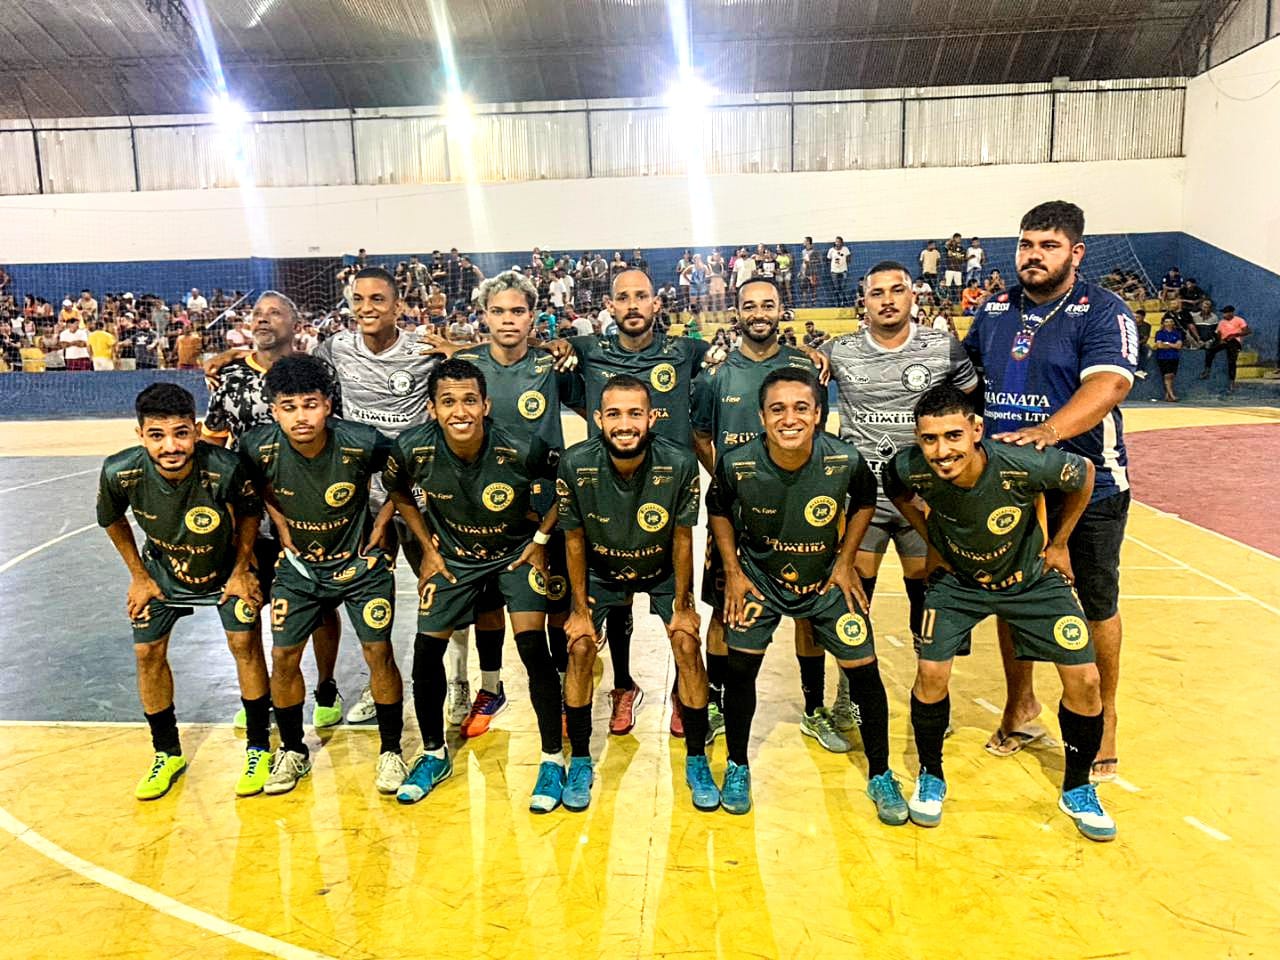 Limeira e Rifa do Jovinho se classificam para a grande final da Copa Comércio de Futsal